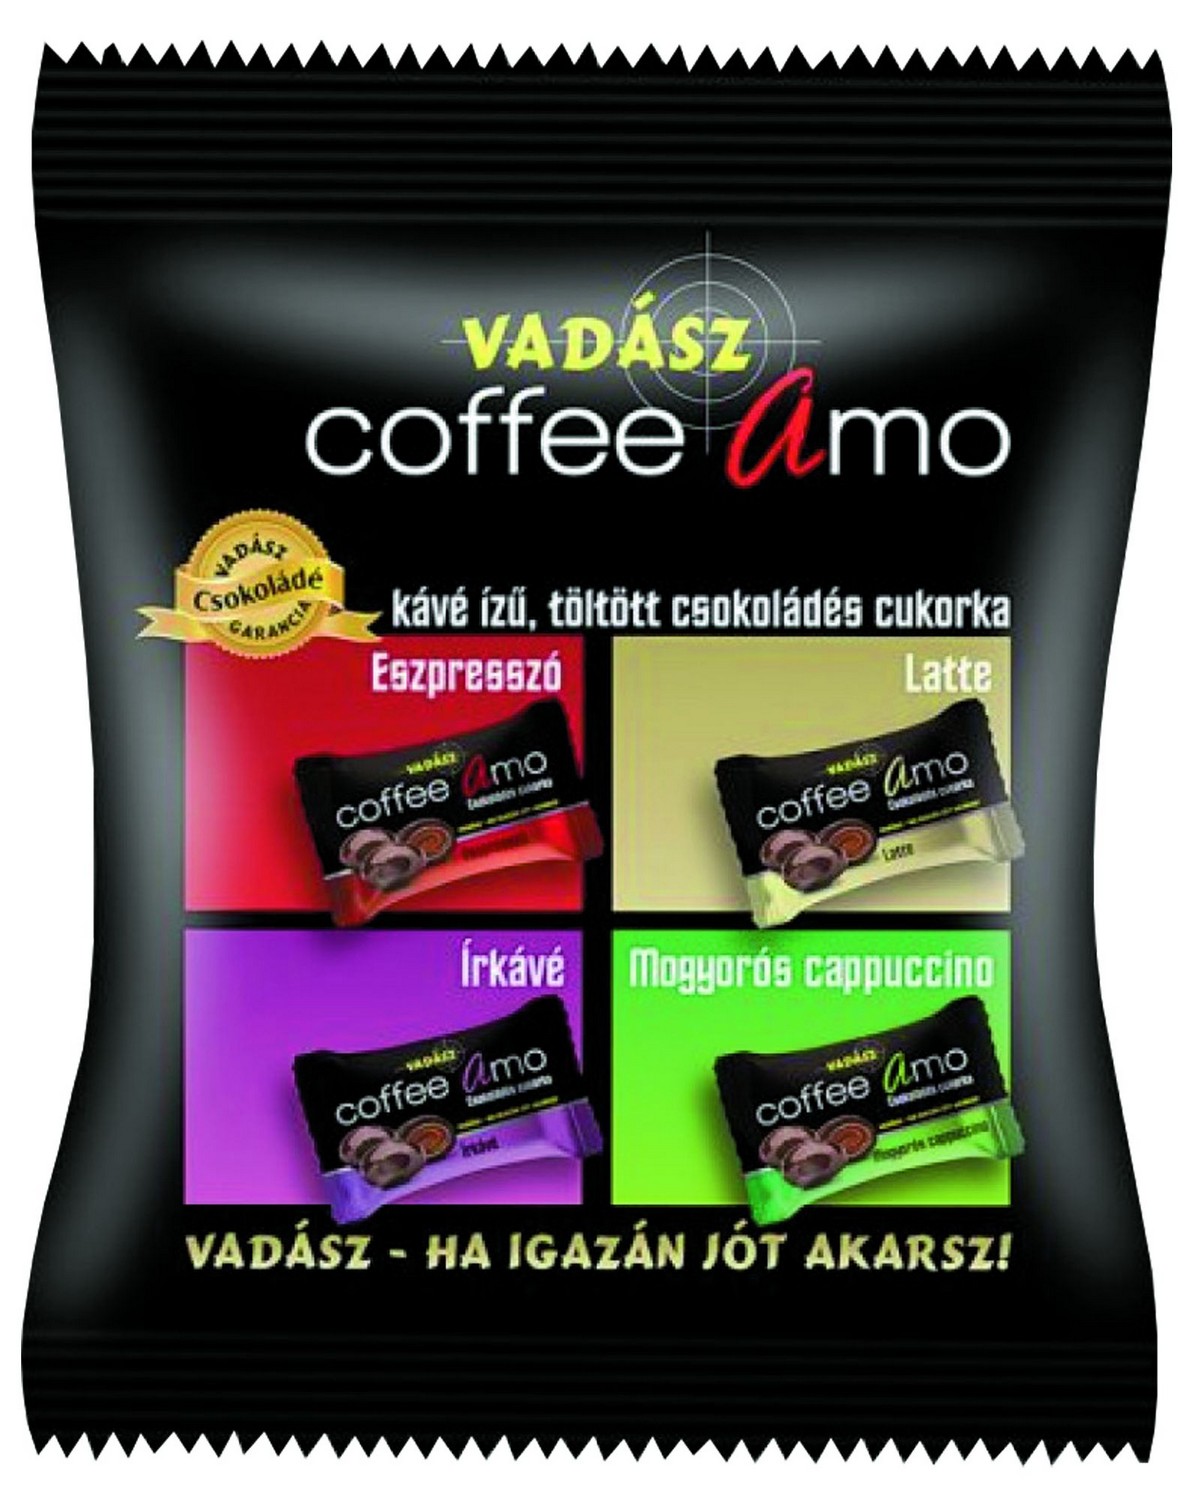 BOMBOANE CIOCOLATA CU GUST DE CAFEA VADASZ COFFEE AMO 100G